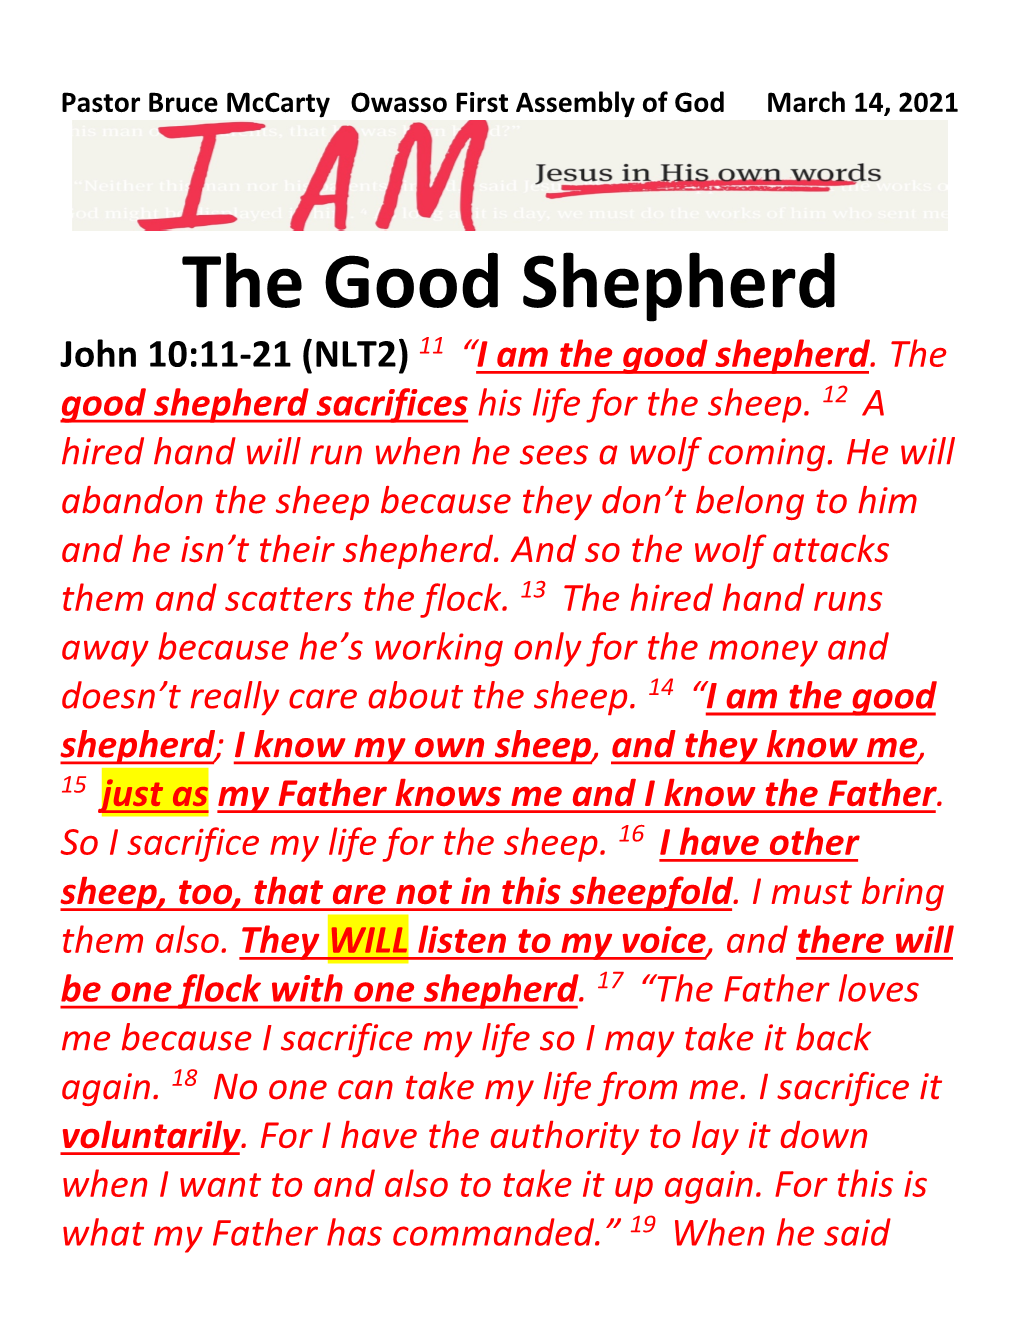 The Good Shepherd John 10:11-21 (NLT2) 11 “I Am the Good Shepherd